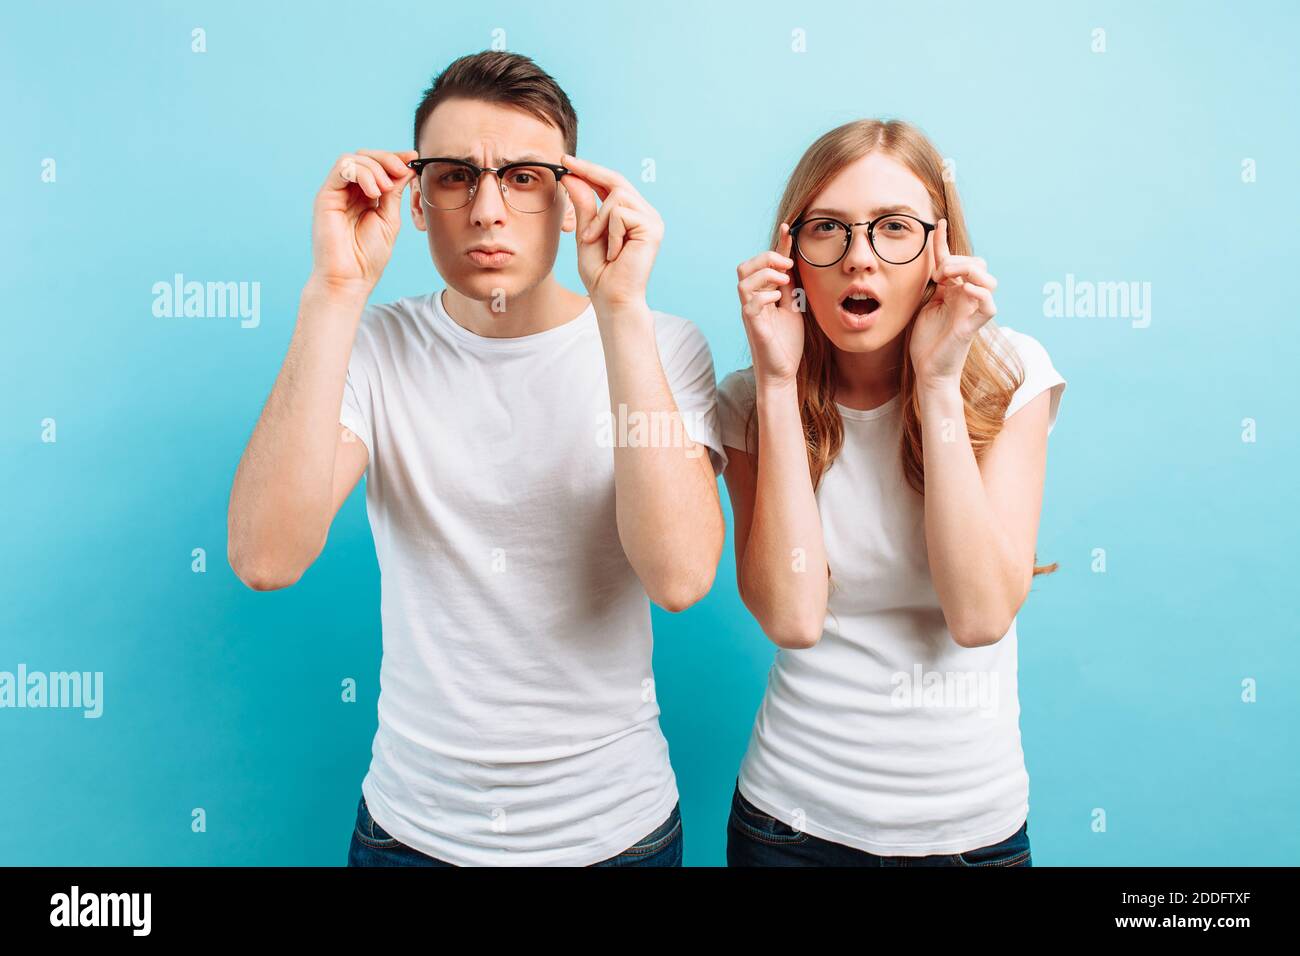 Un jeune couple avec une mauvaise vue, un homme et une femme avec des lunettes regardent dans la caméra, essayant de voir quelque chose, sur un fond bleu Banque D'Images